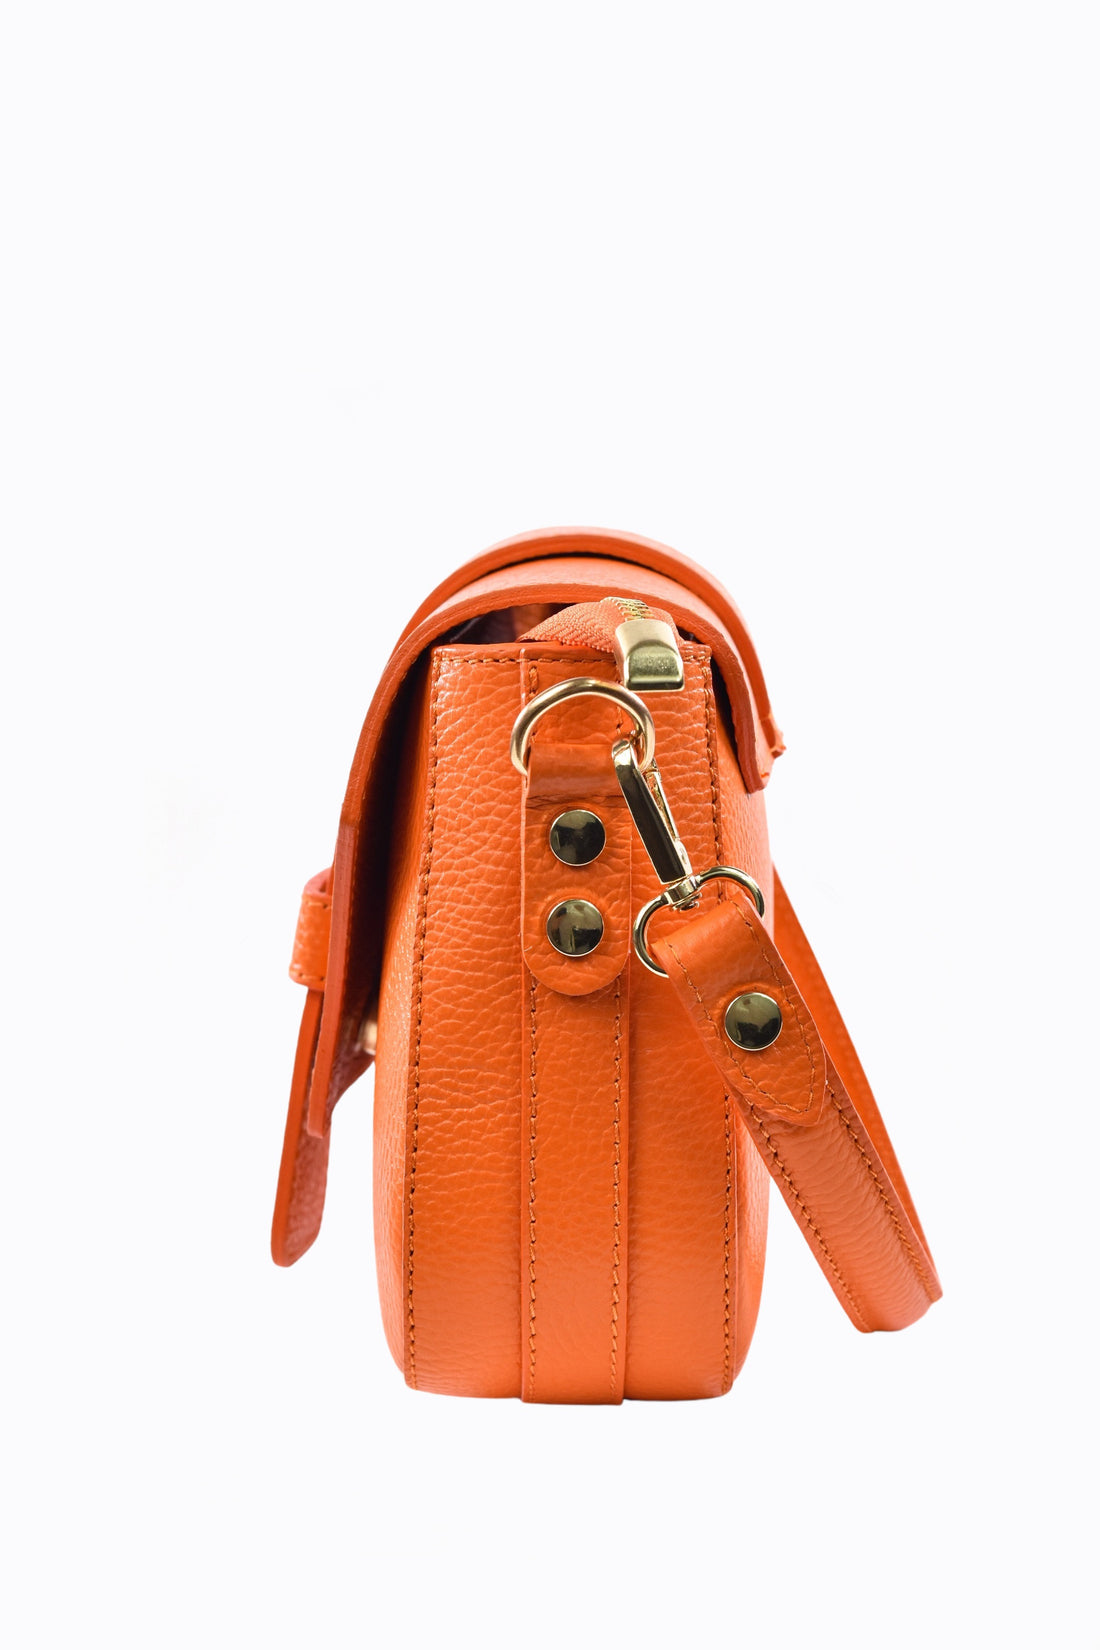 Braid bag in Fuchsia Dollar leather